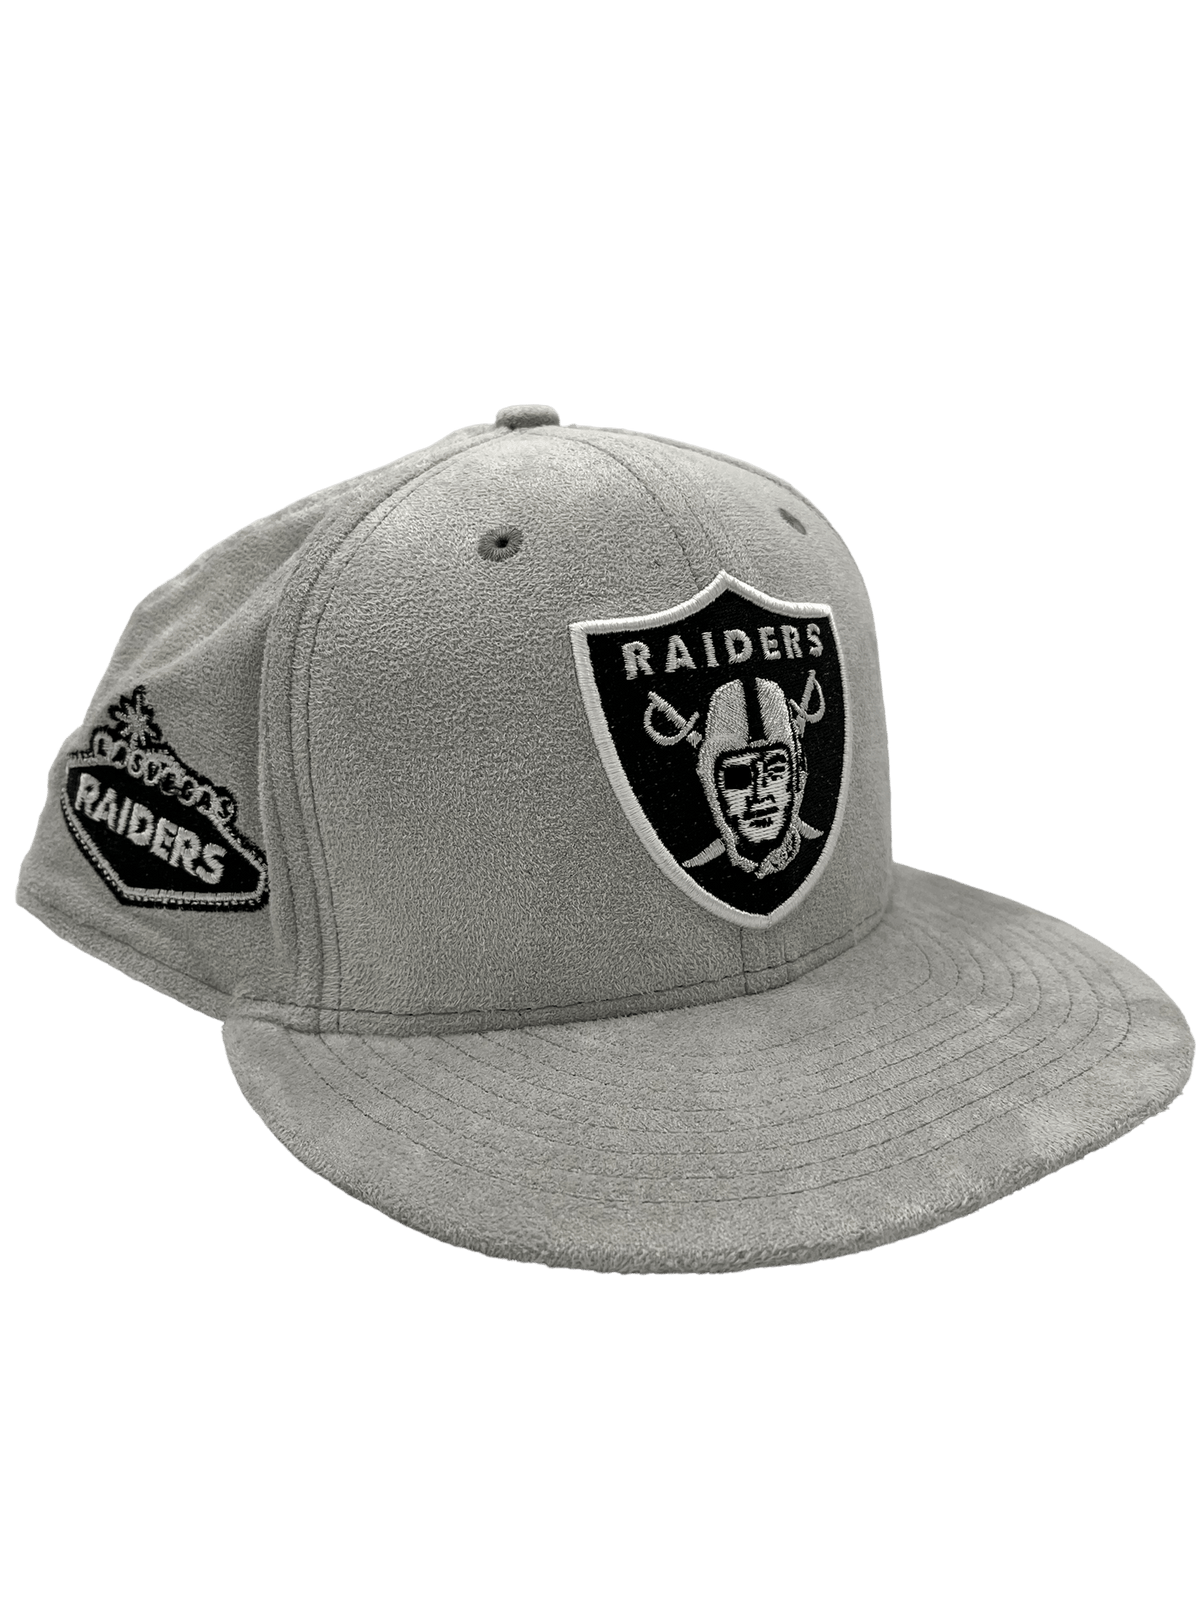 NHL Washington Capitals Vintage Suede Grey Snapback Hat, Men's, Gray